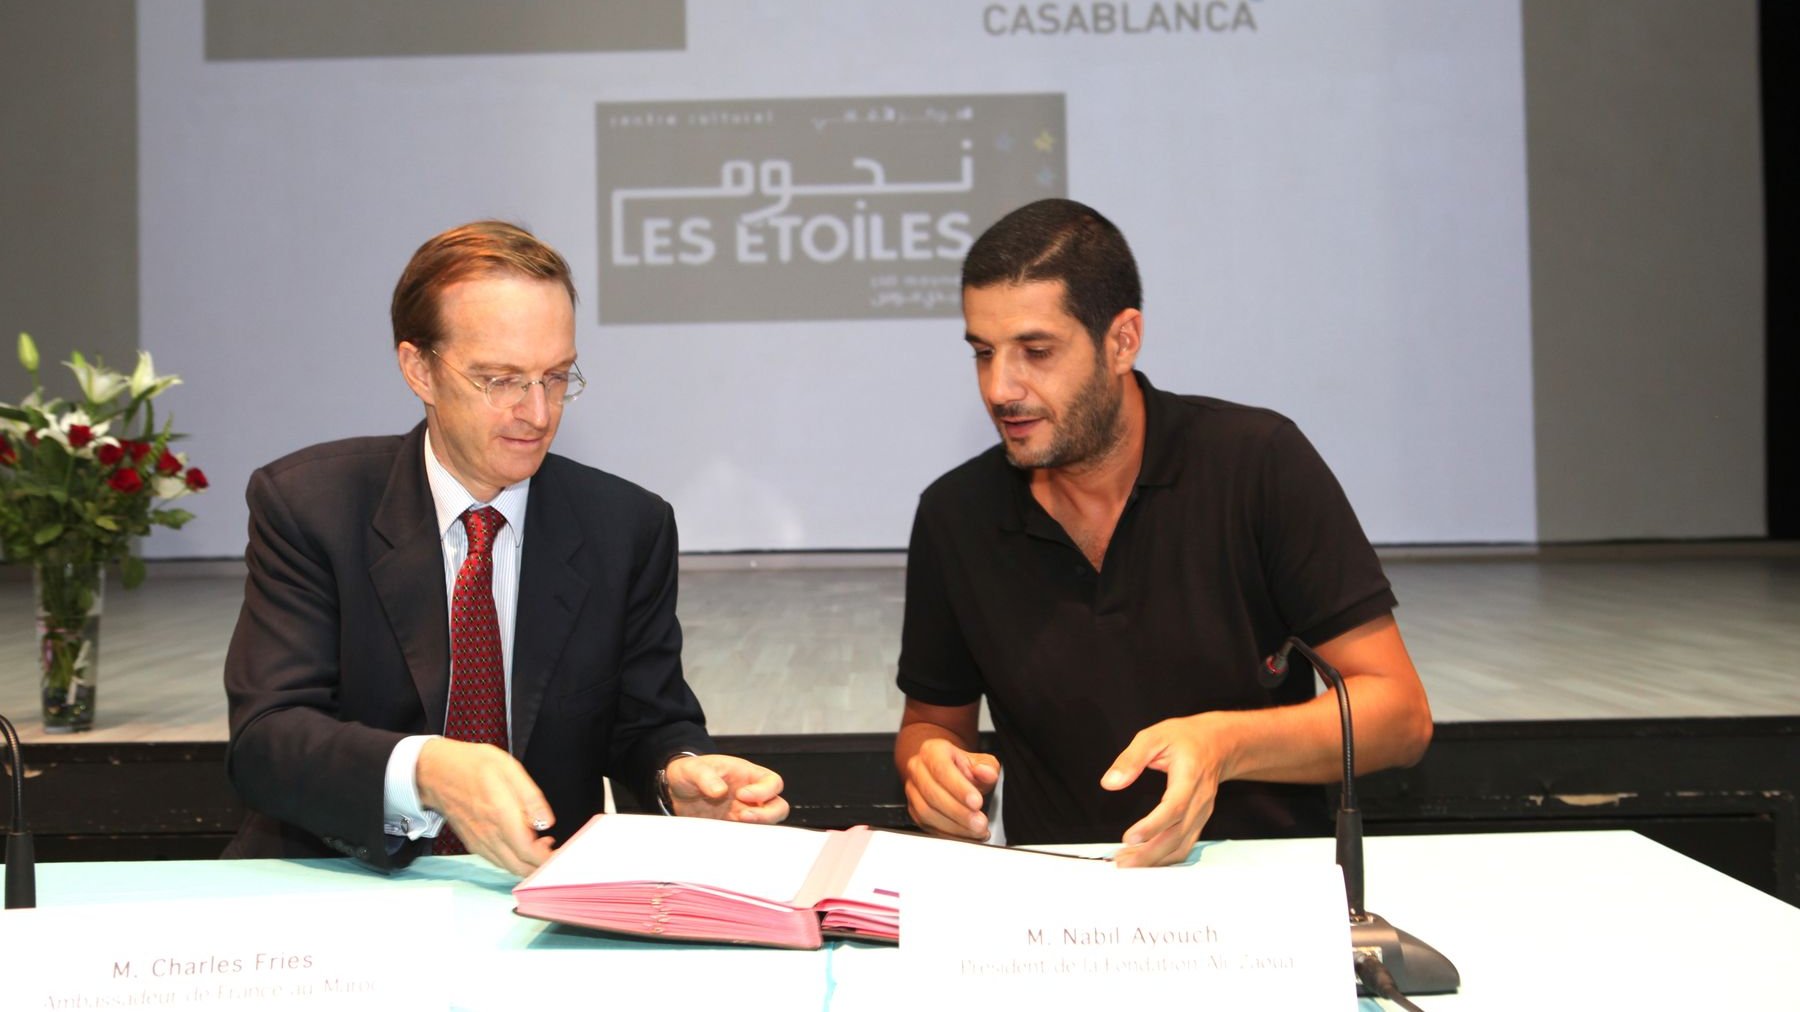 Ce partenariat premettra de renforcer la collaboration entre l'Institut français de Casablanca et le centre culturel qui ouvira officiellement ses portes le 23 octobre 2014.  
